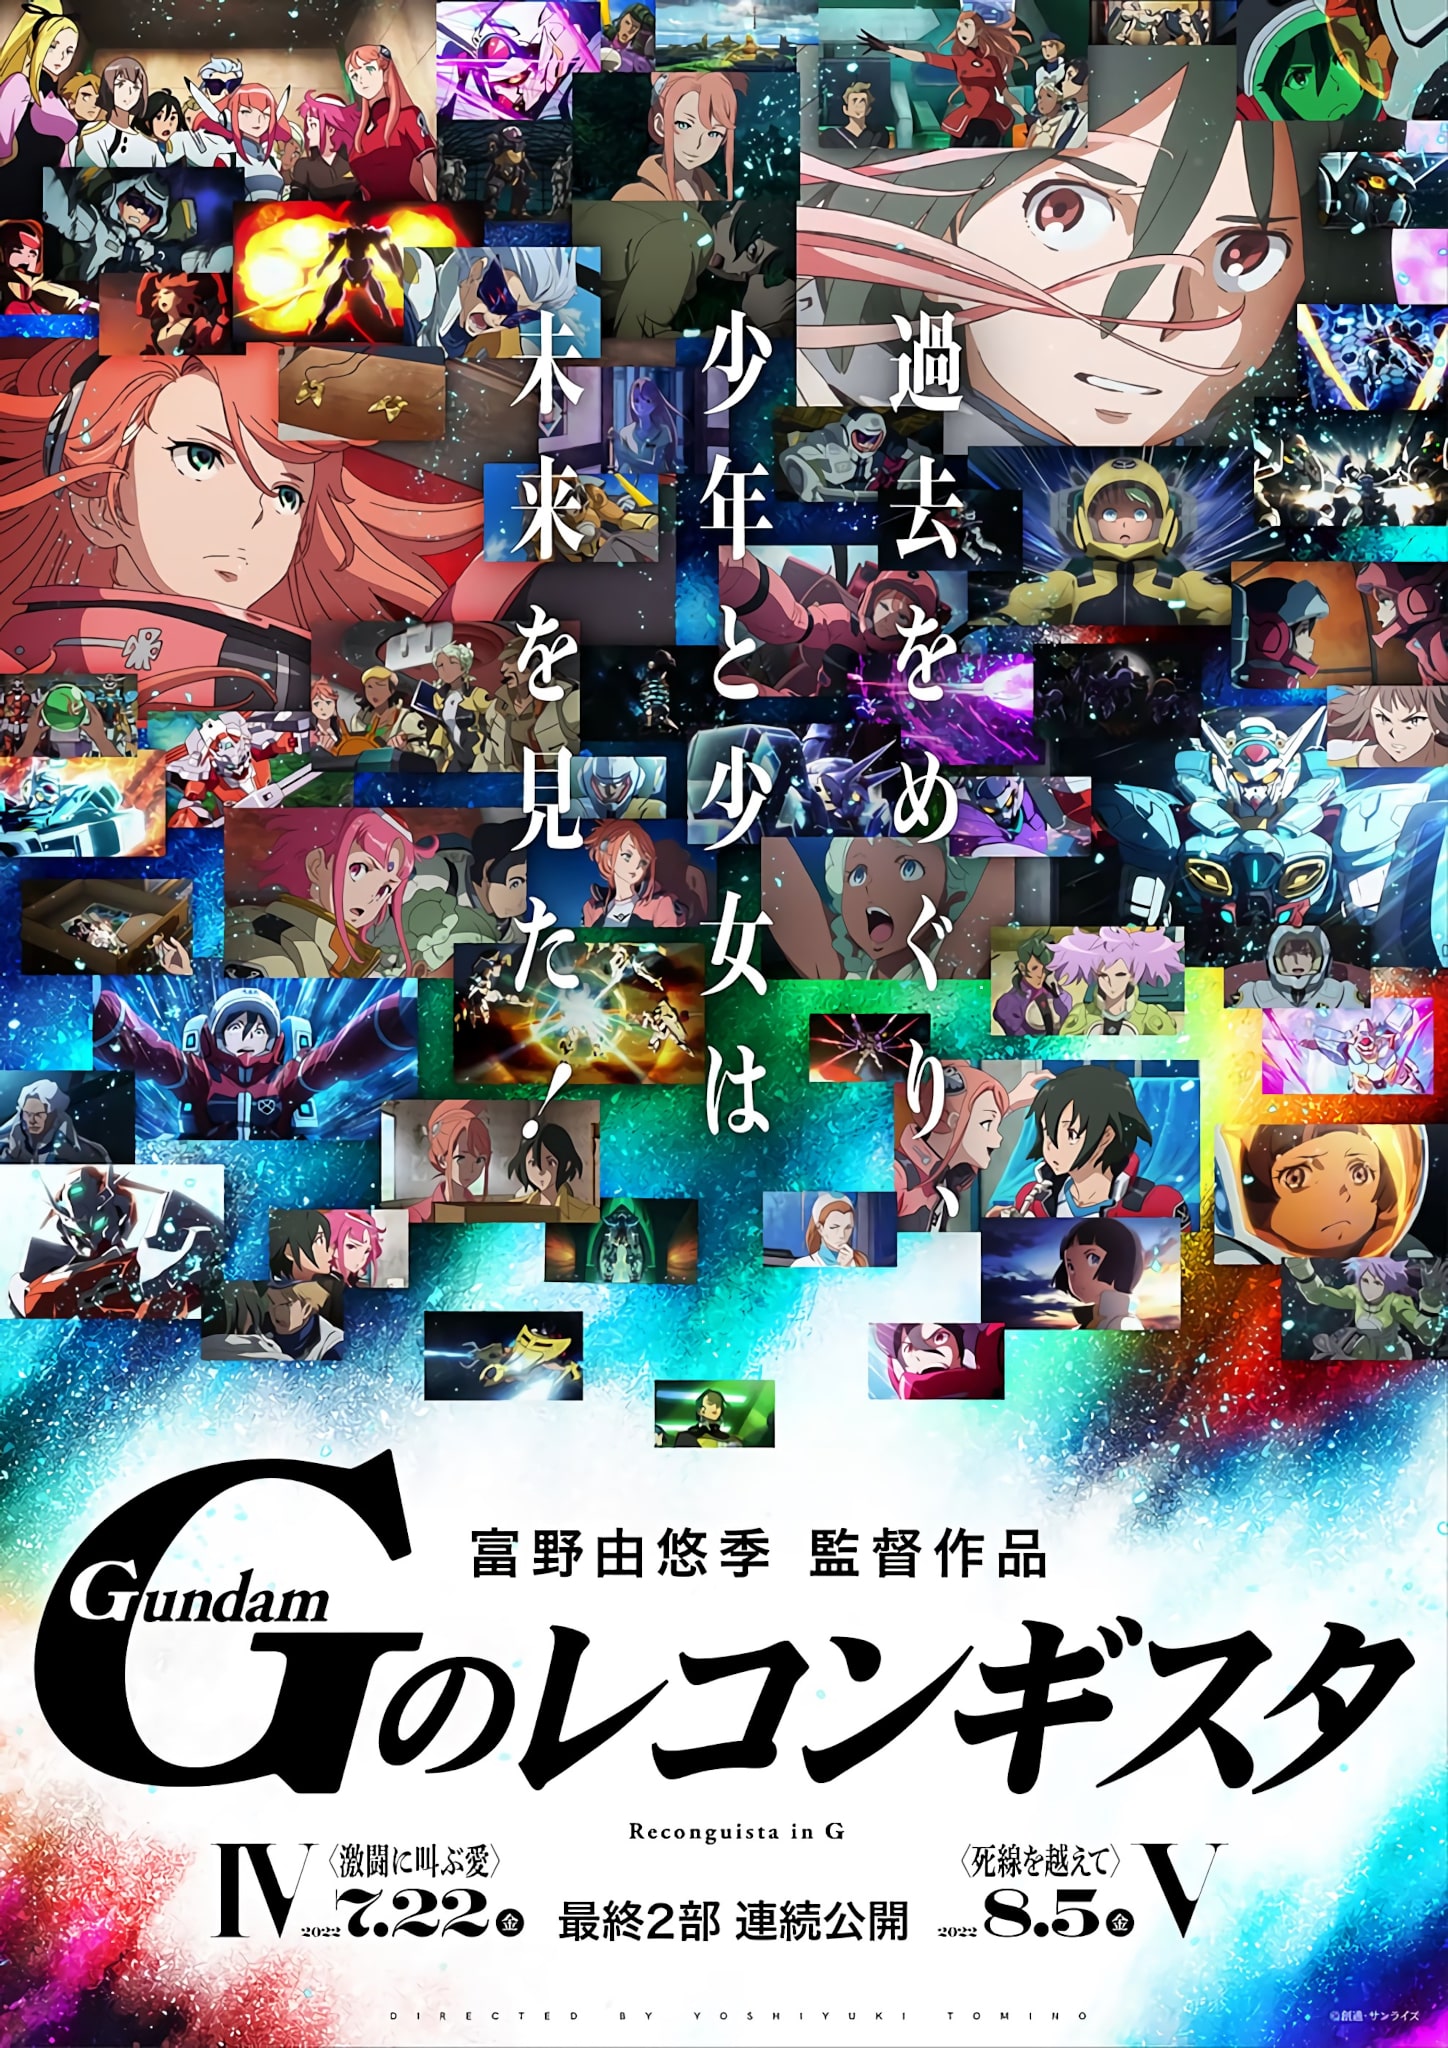 Premier visuel pour le film Gundam : Reconguista in G - Partie 4